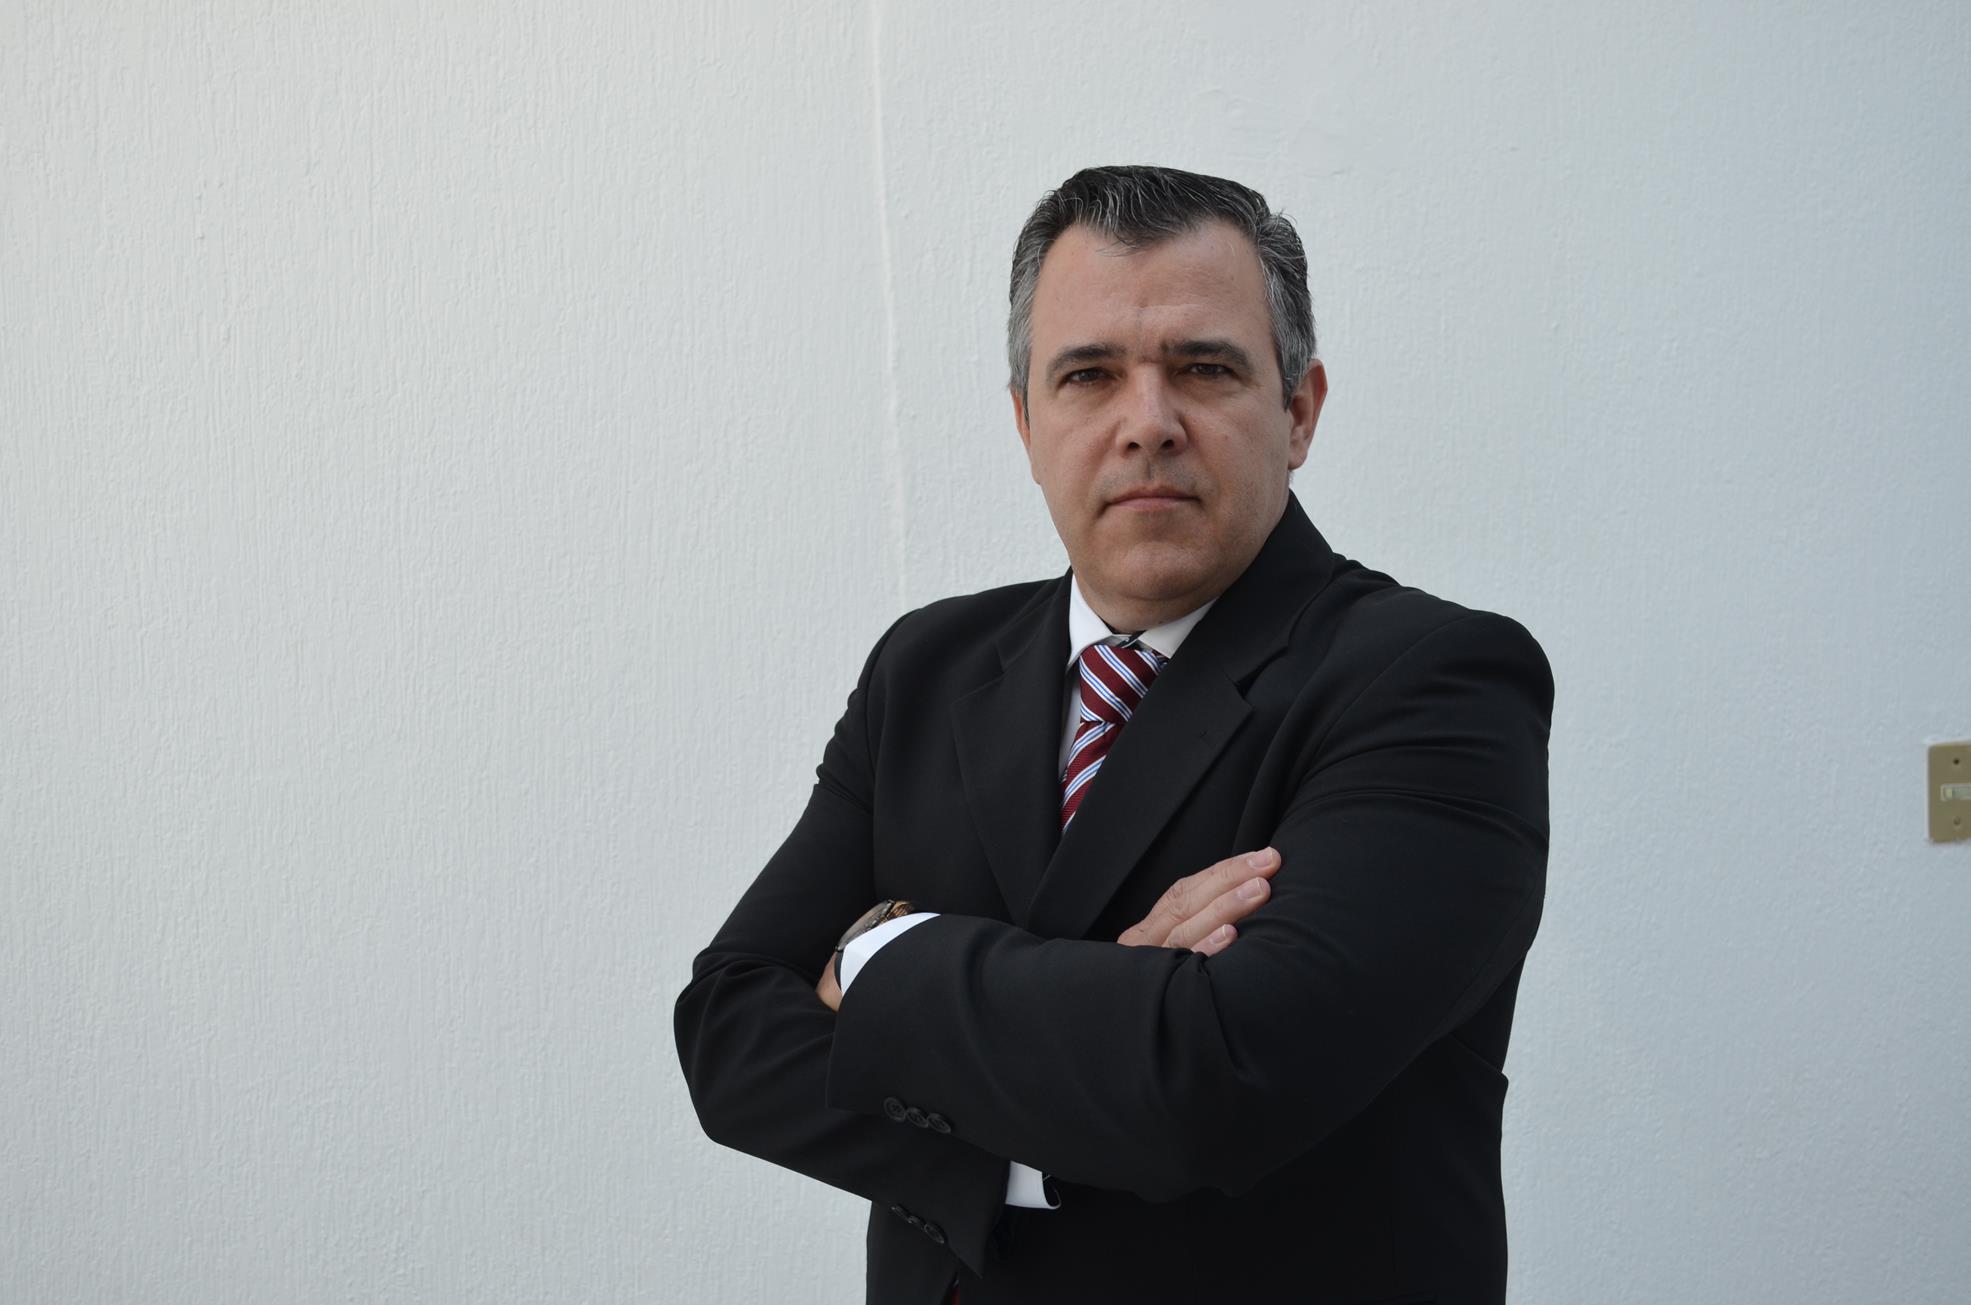 Dr. Luciano Da Silva